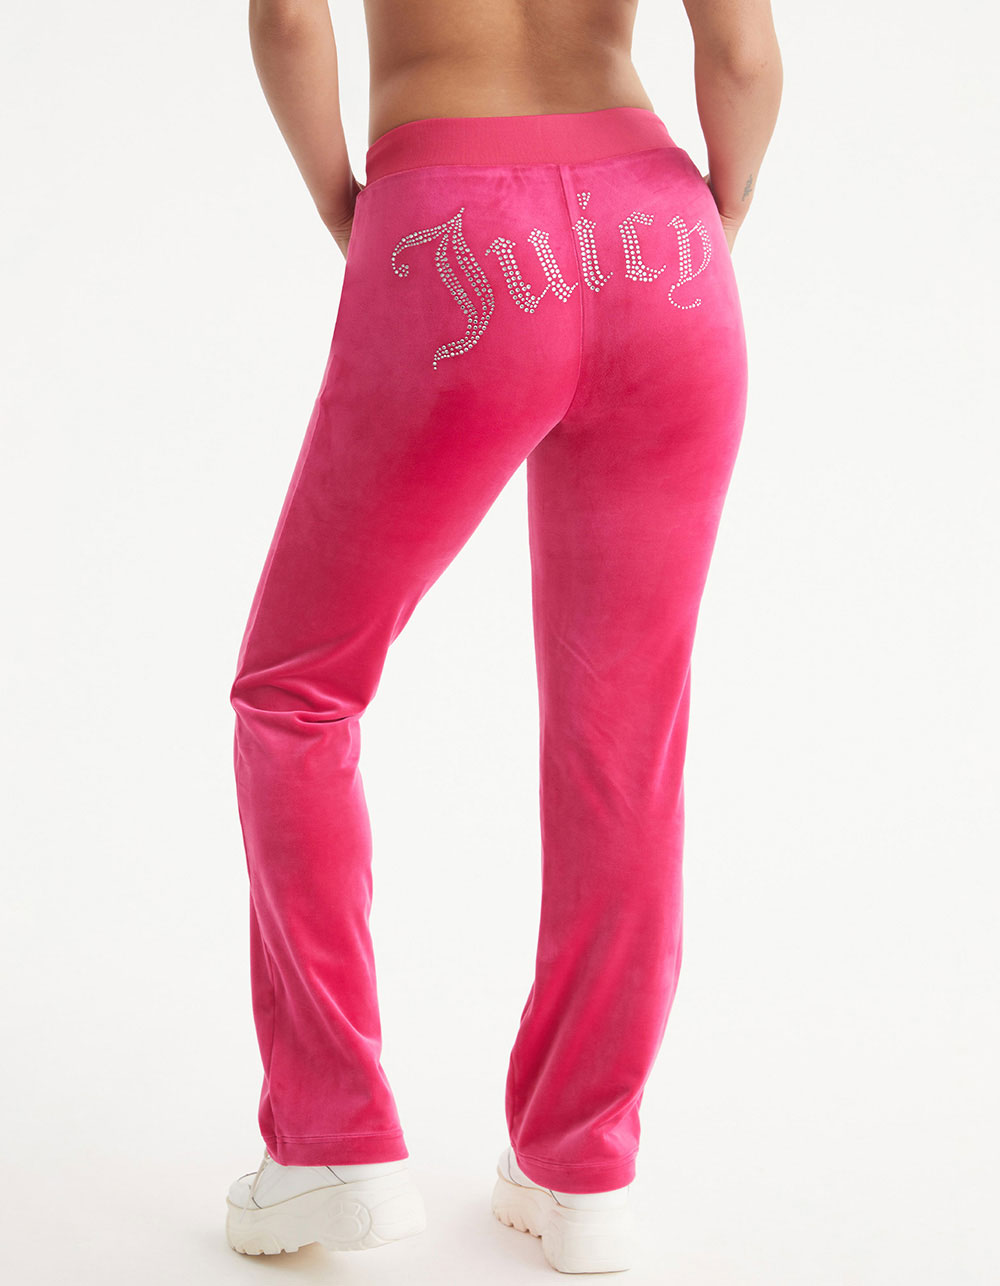 Y2K Juicy Couture Sport Leggings, Size M, In very